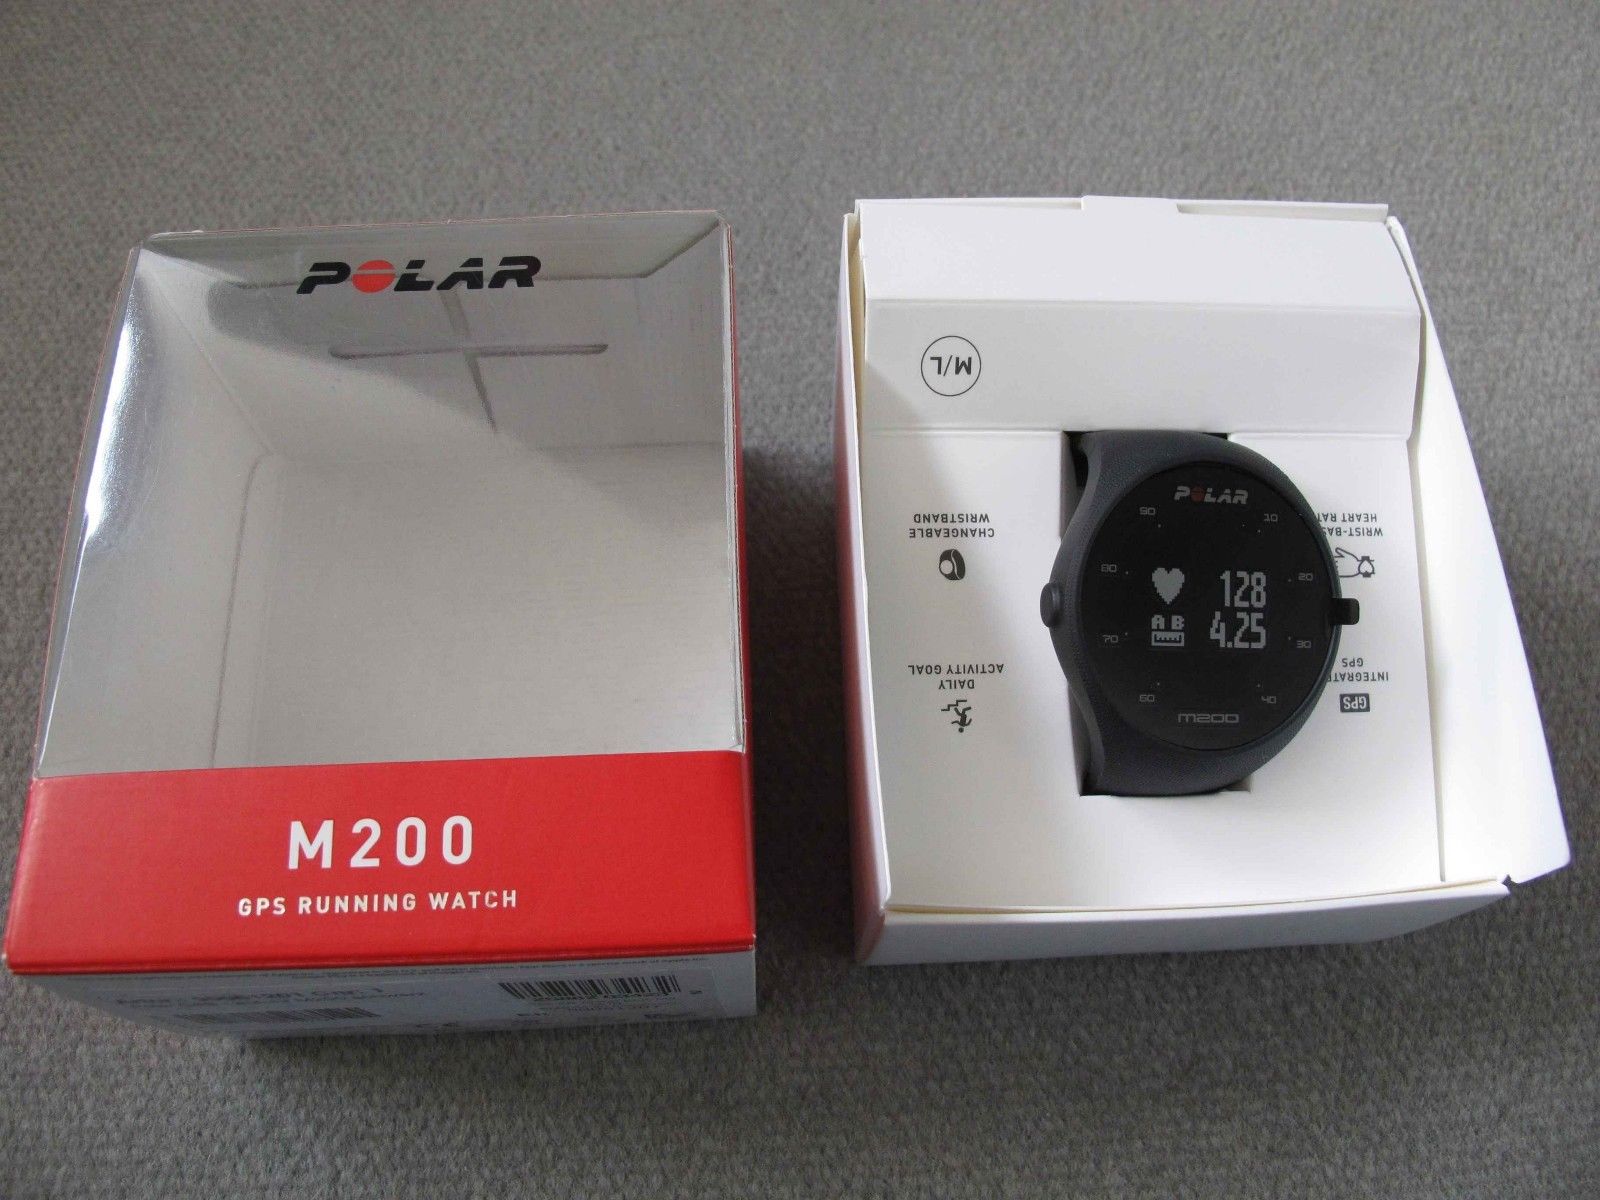 POLAR M200 GPS Running Watch schwarz neu, geöffnet aber nicht benutzt new black